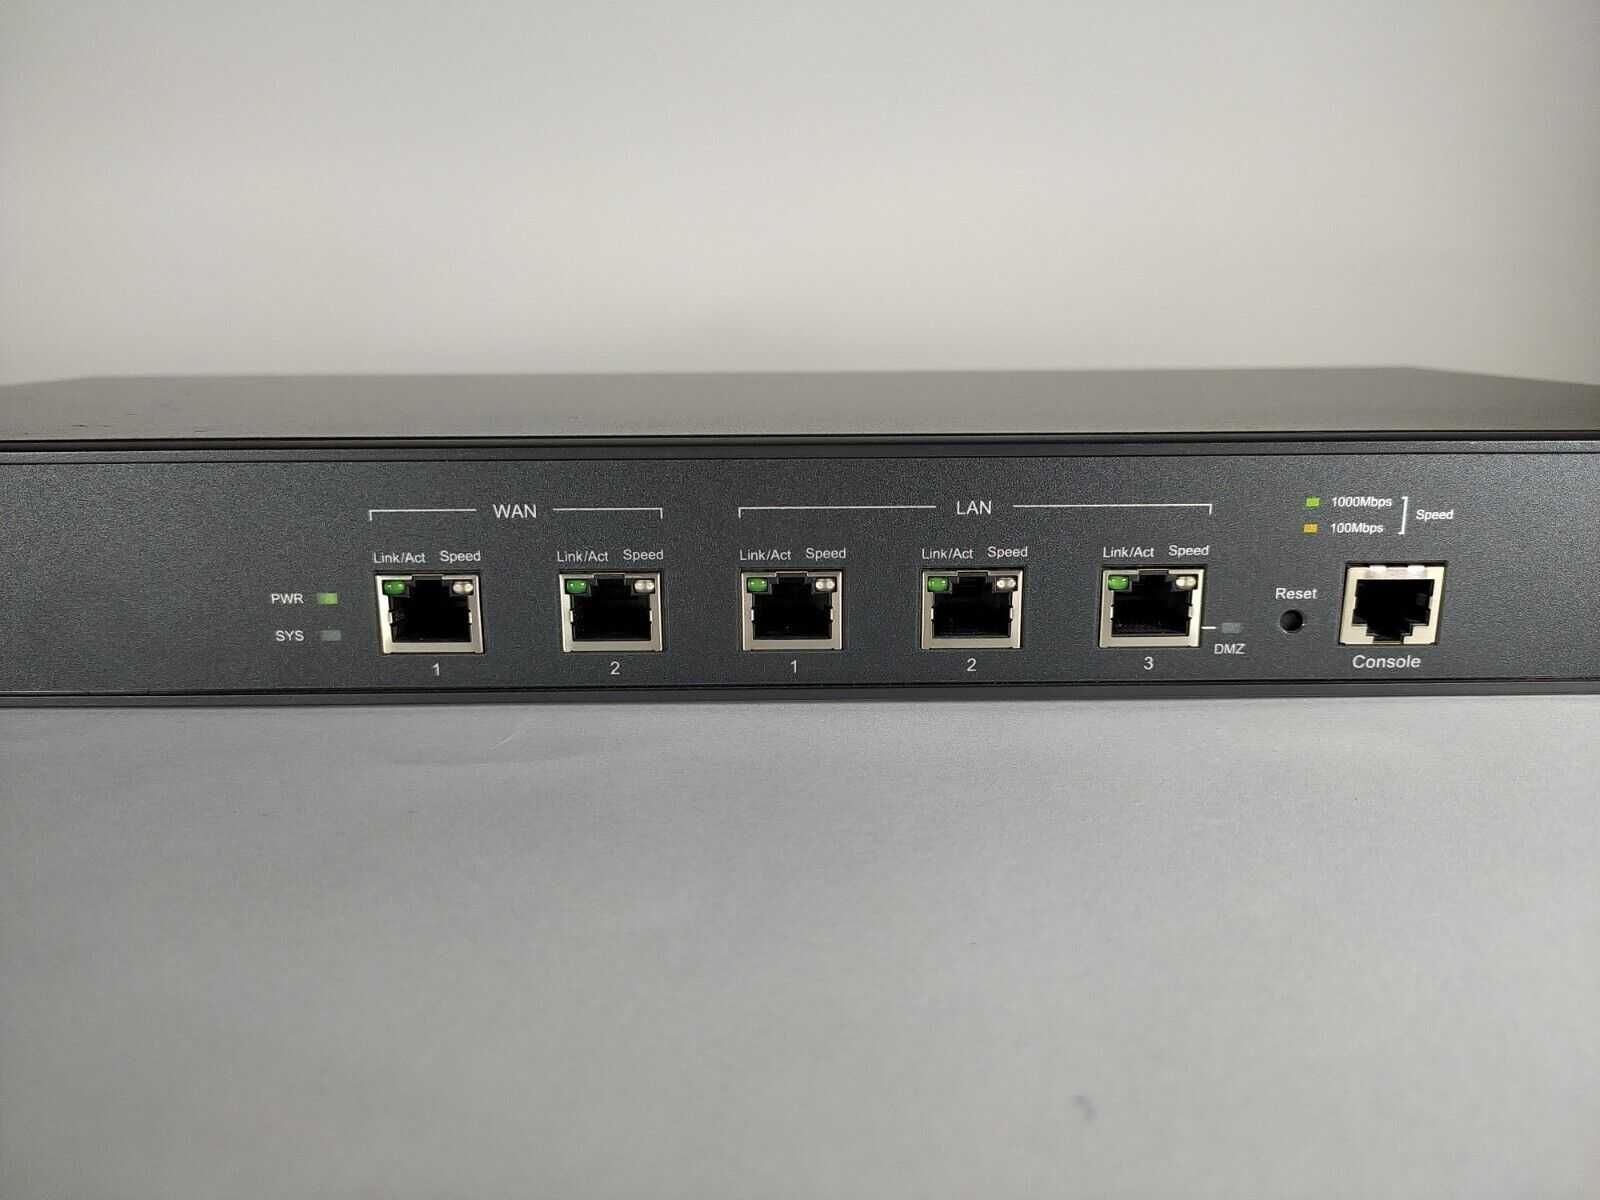 TP-Link TL-ER6120 SafeStream Gigabit Multi-WAN VPN Router, мощен рутер